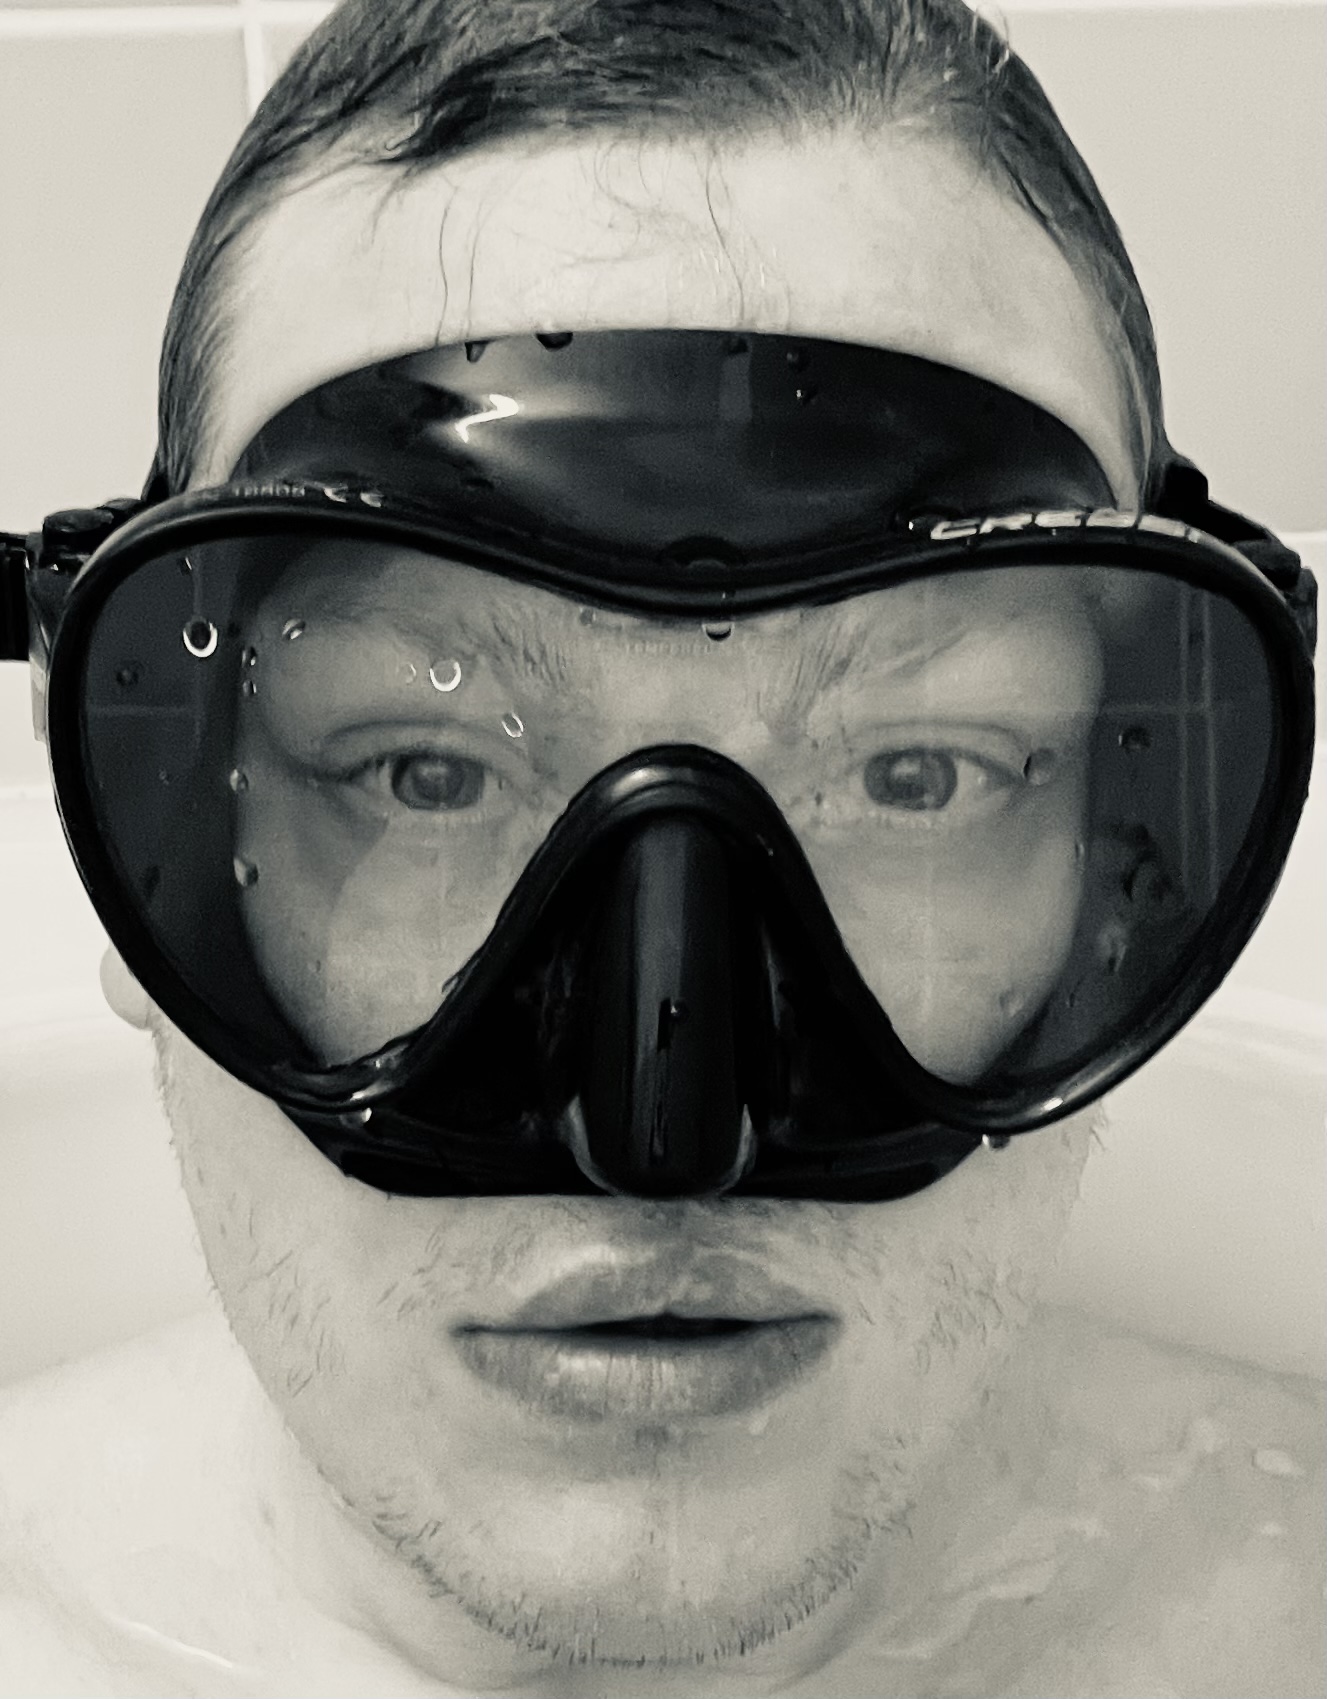 Underwater breathing tube